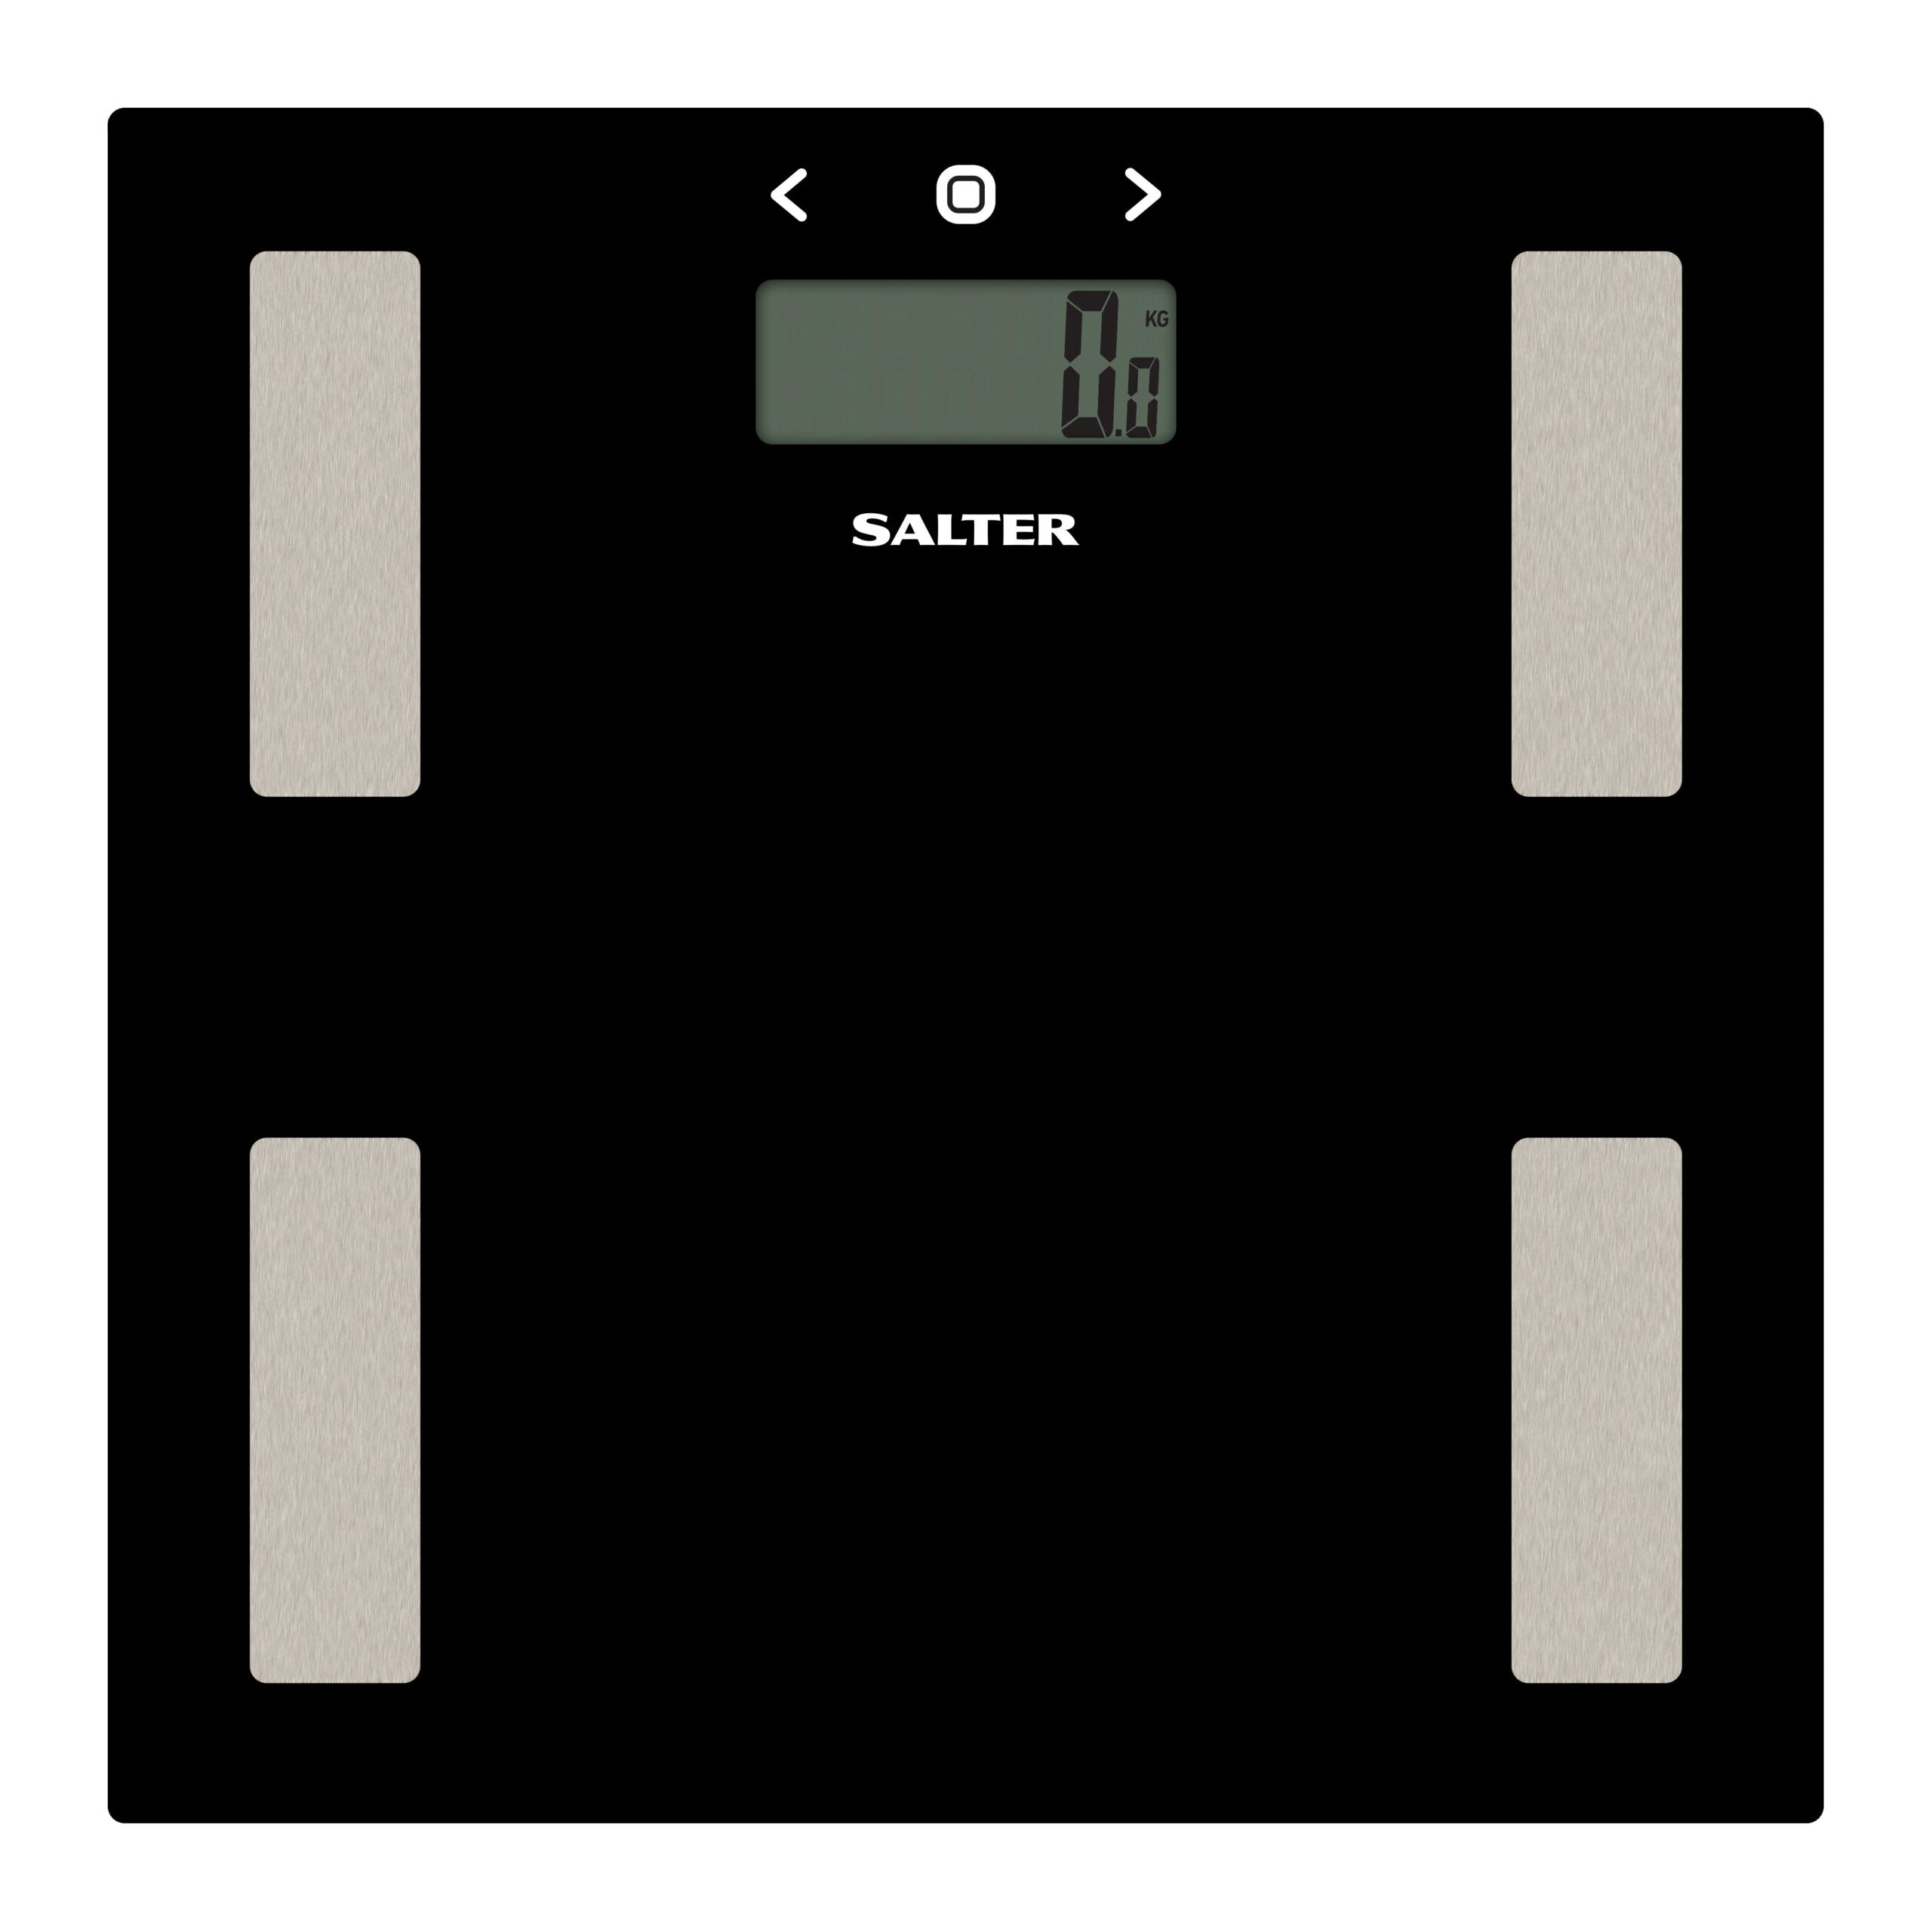 Billede af Salter Badevægt elektronisk BMI